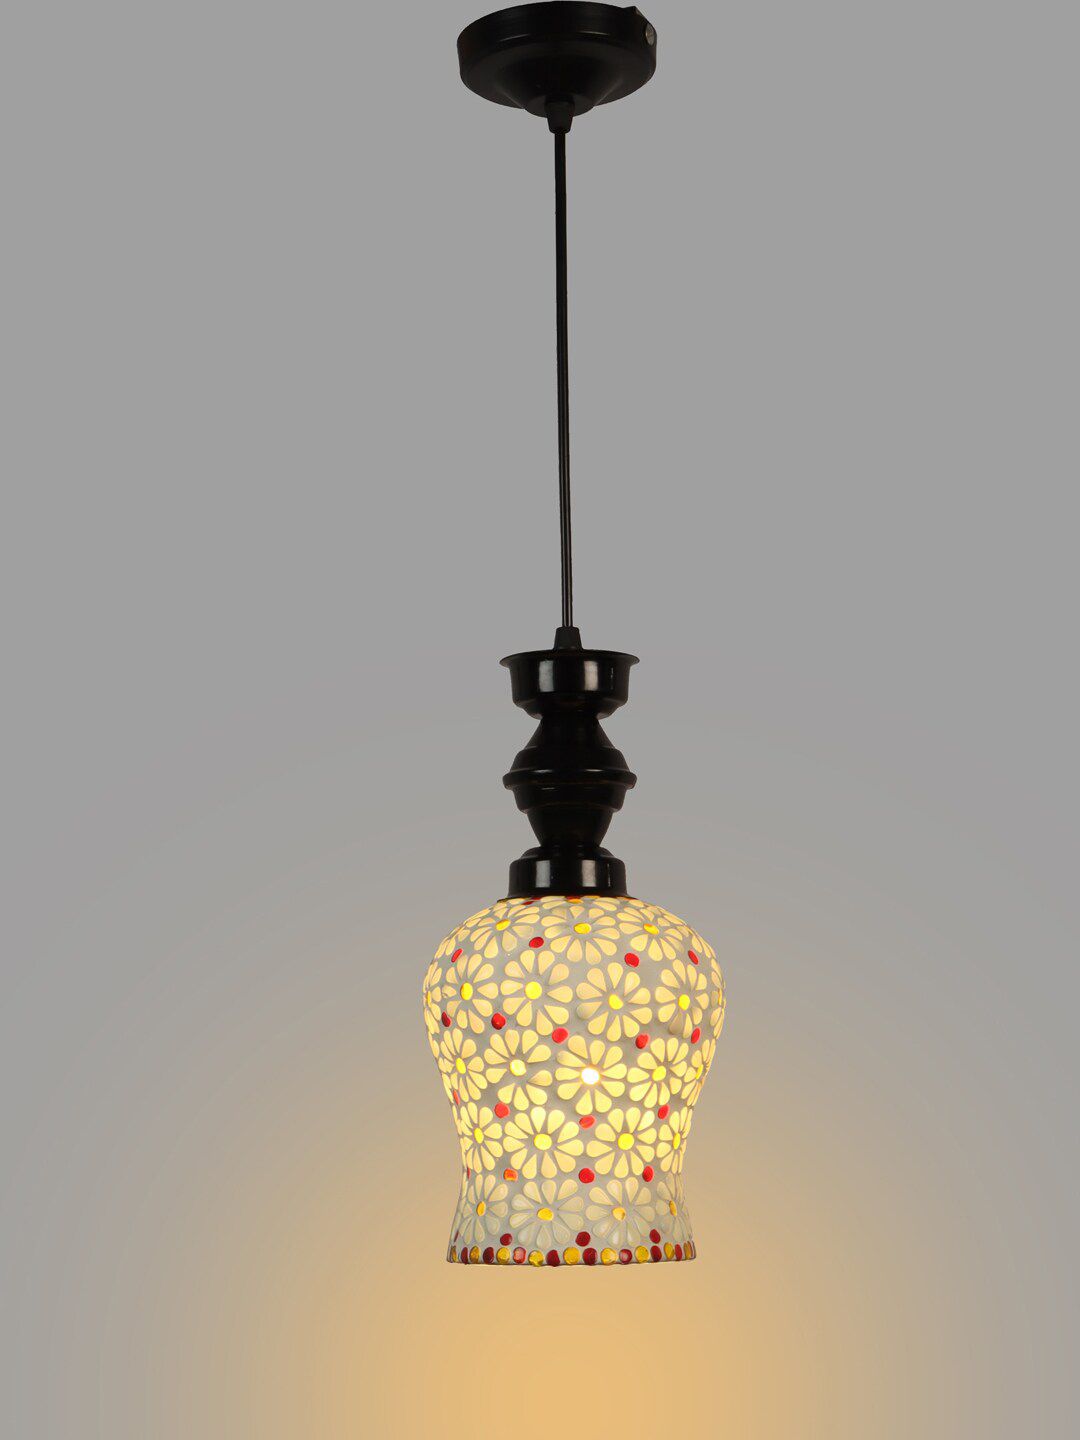 foziq Black & White Textured Ceiling Lamp Price in India